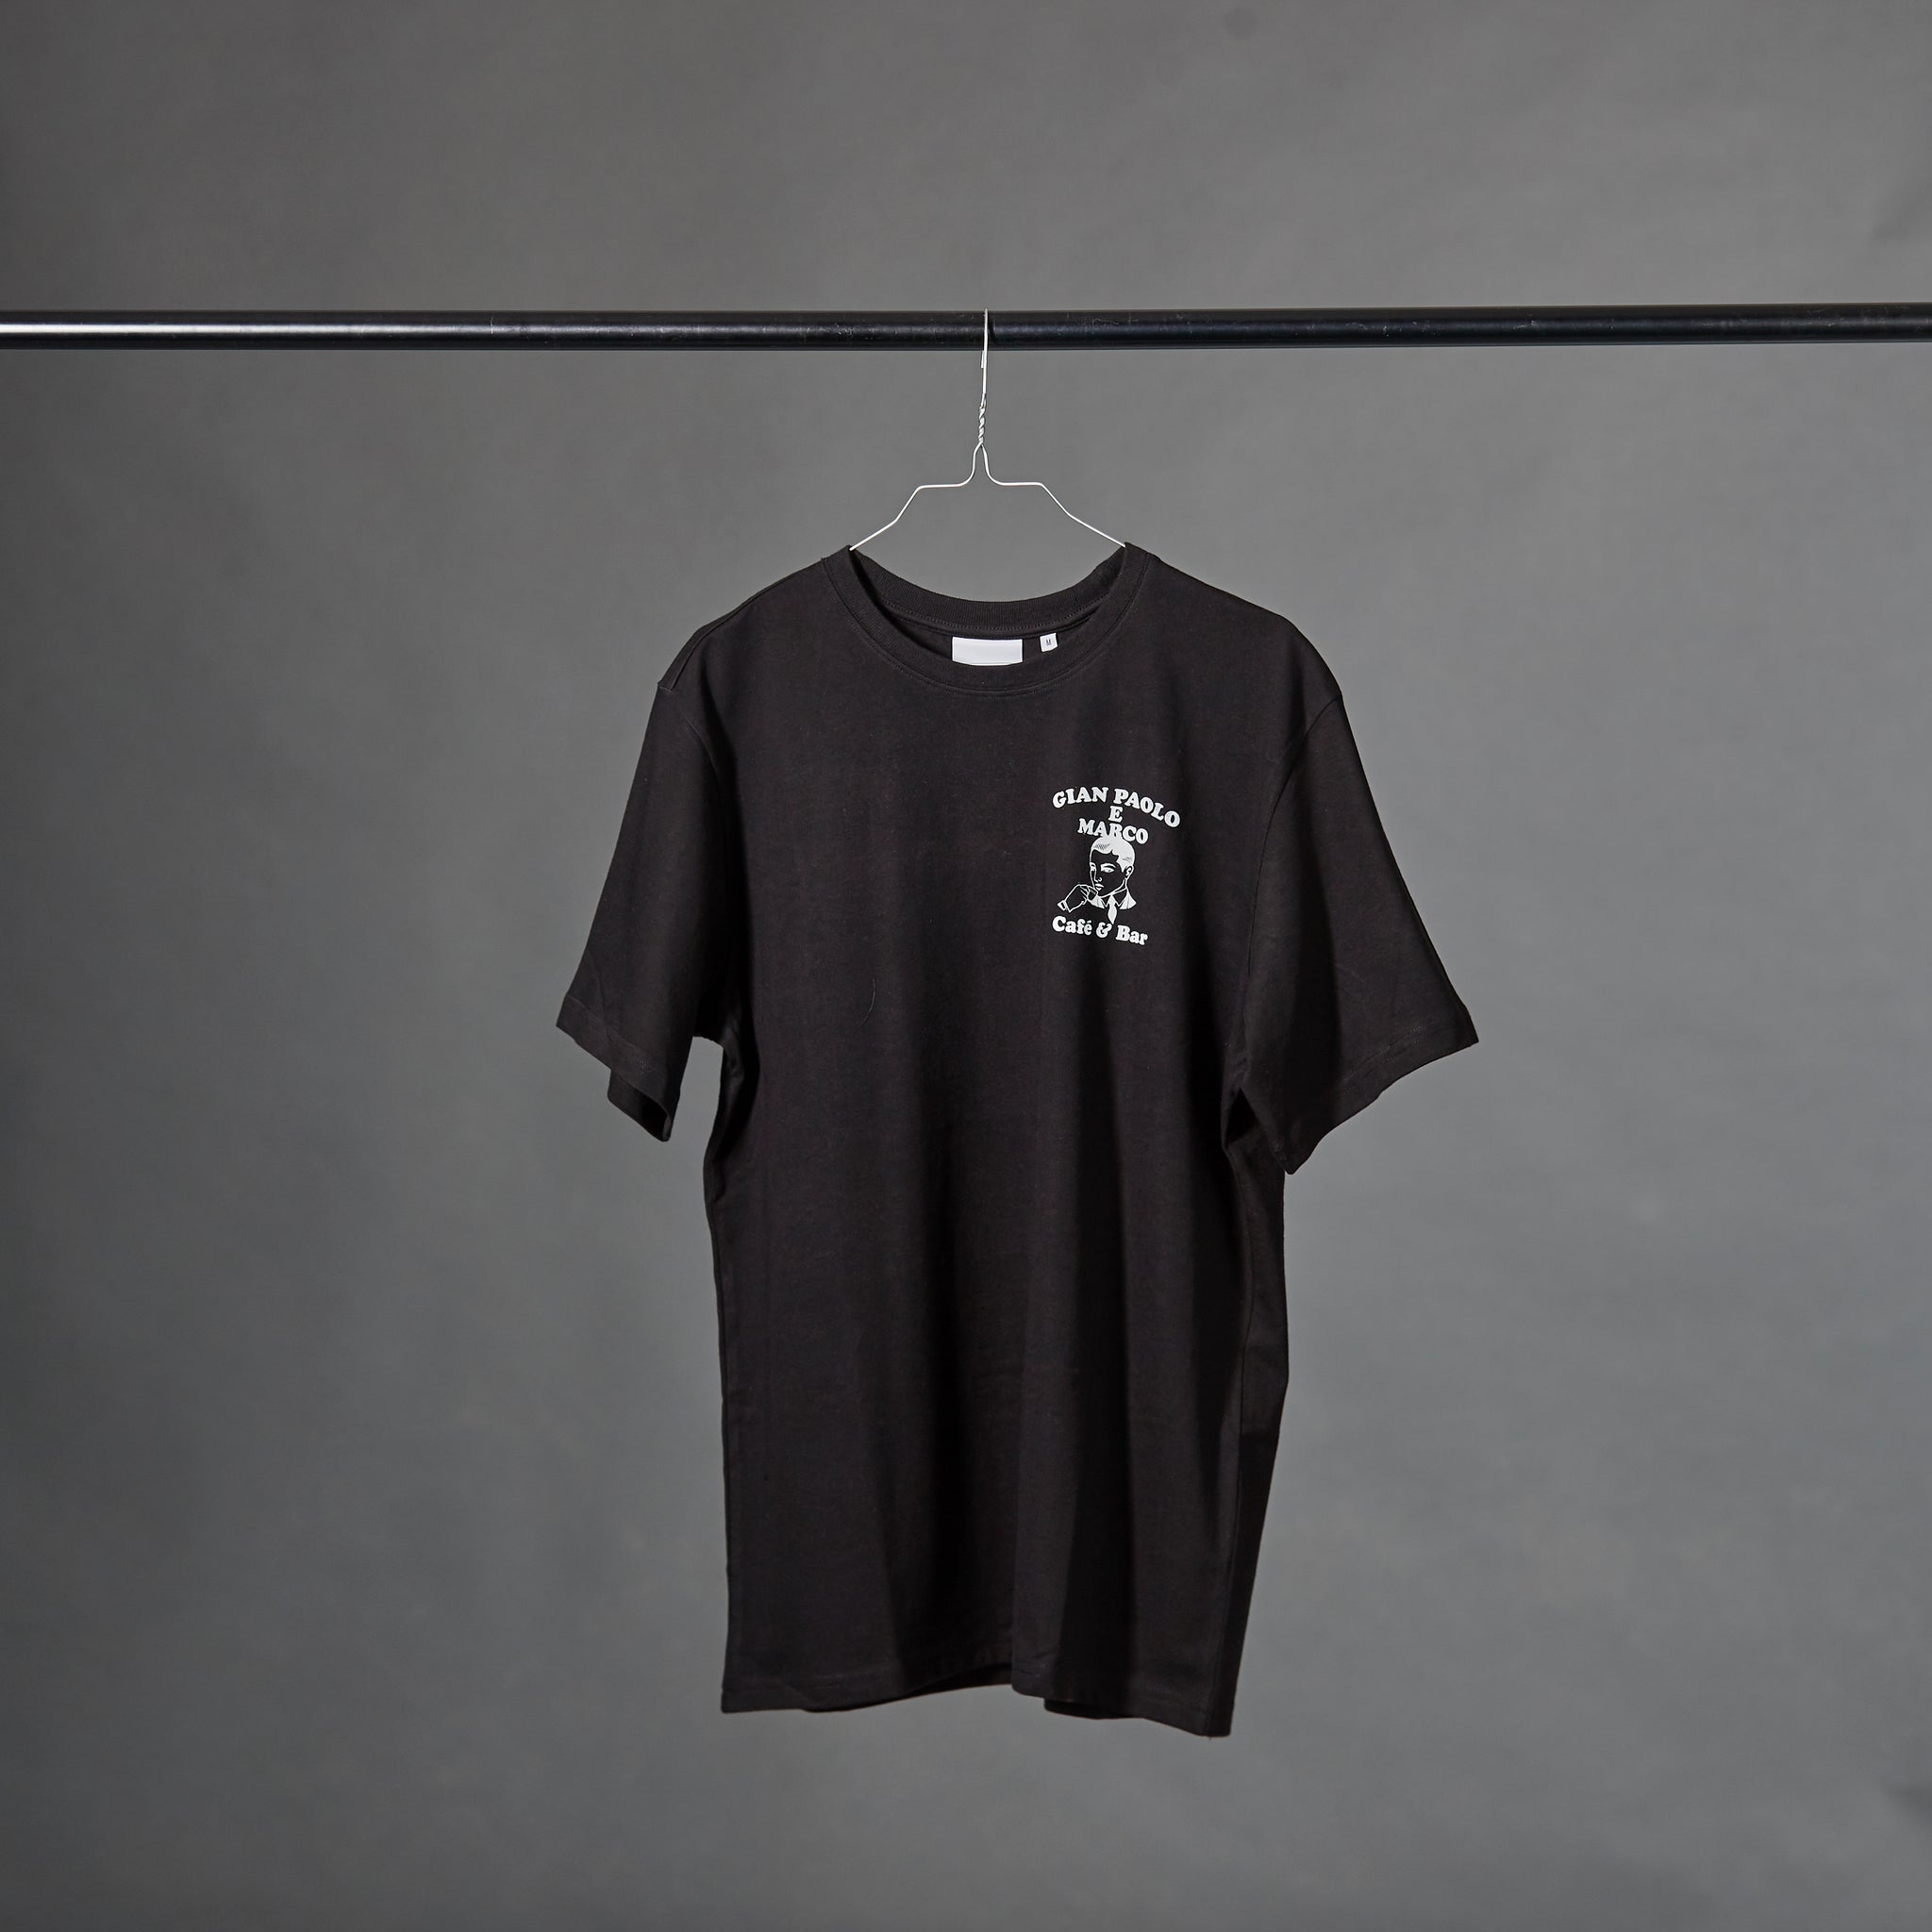 GPeM T-Shirt front/ back Print